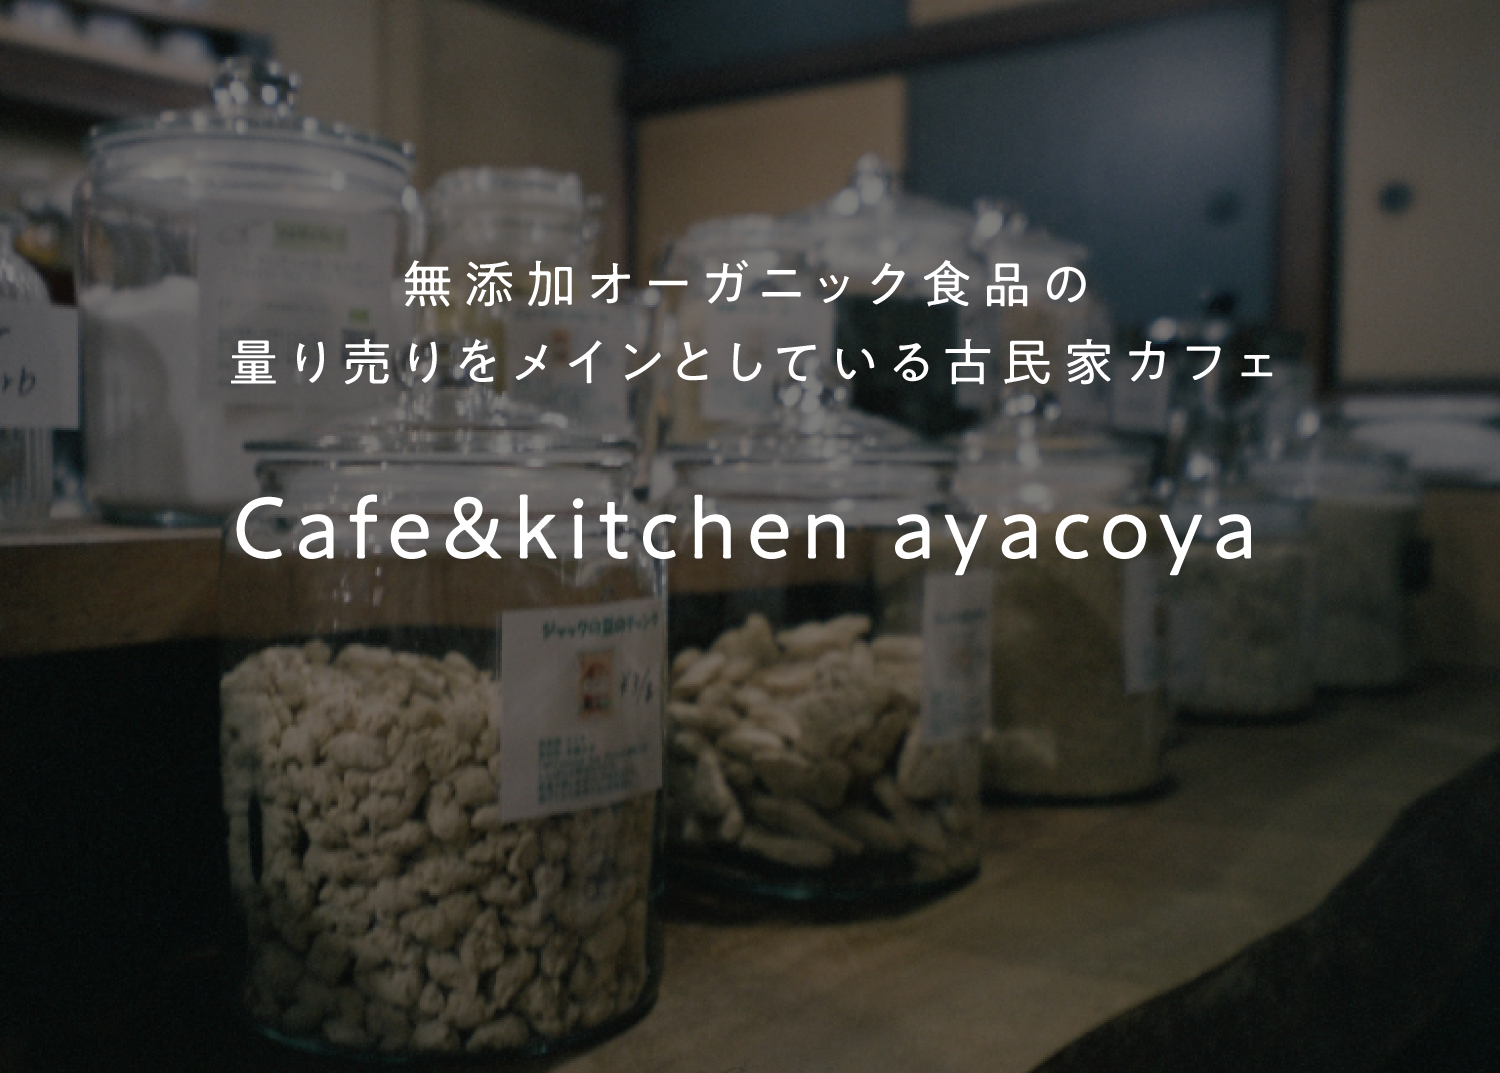 Cafe&kitchen ayacoya